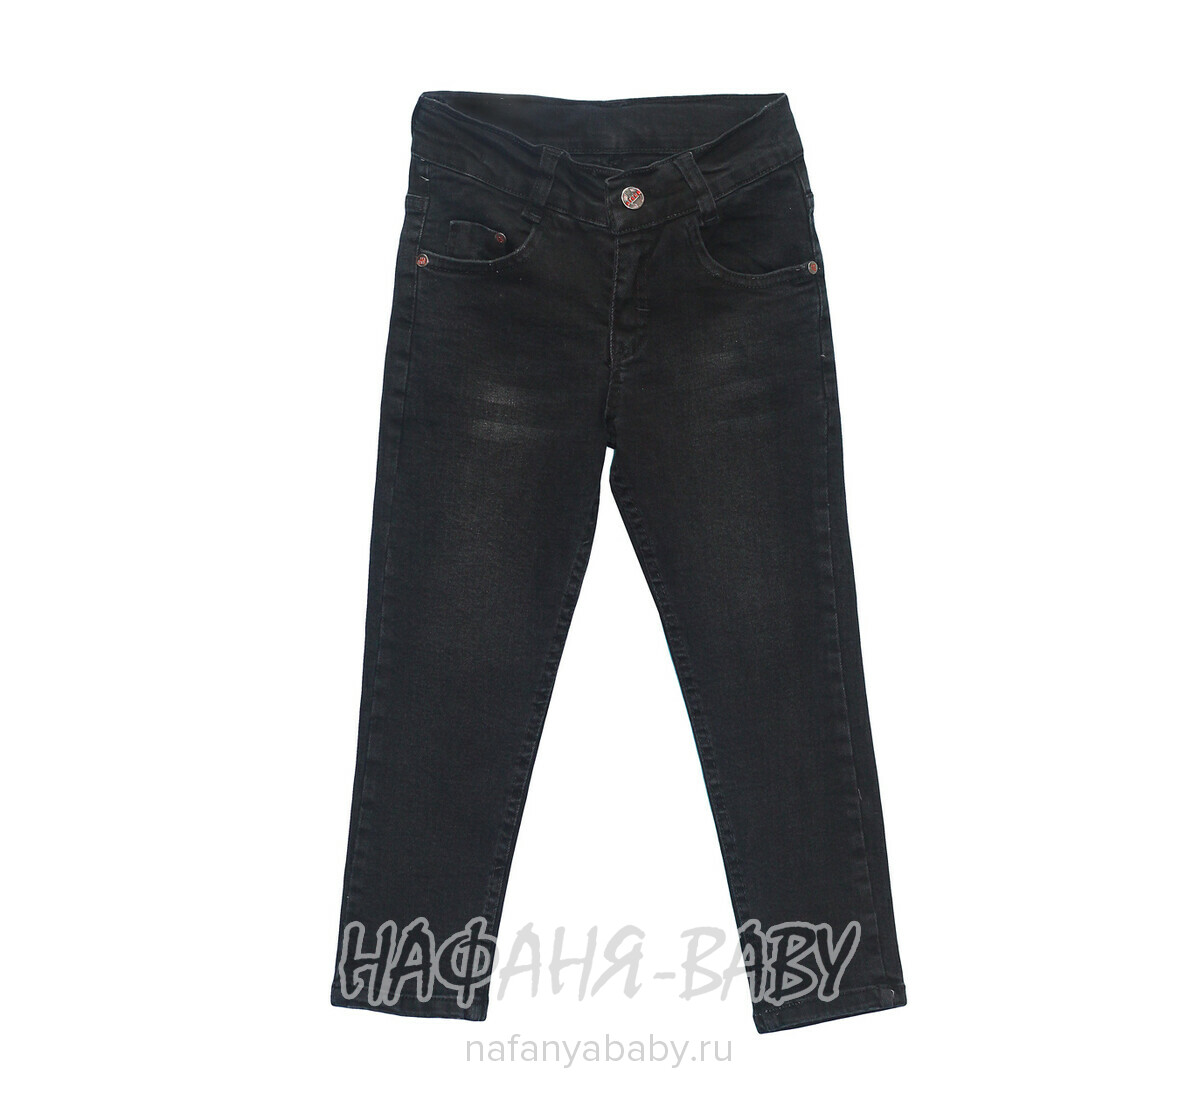 Подростковые джинсы ROBIN, купить в интернет магазине Нафаня. арт: 5490-4.